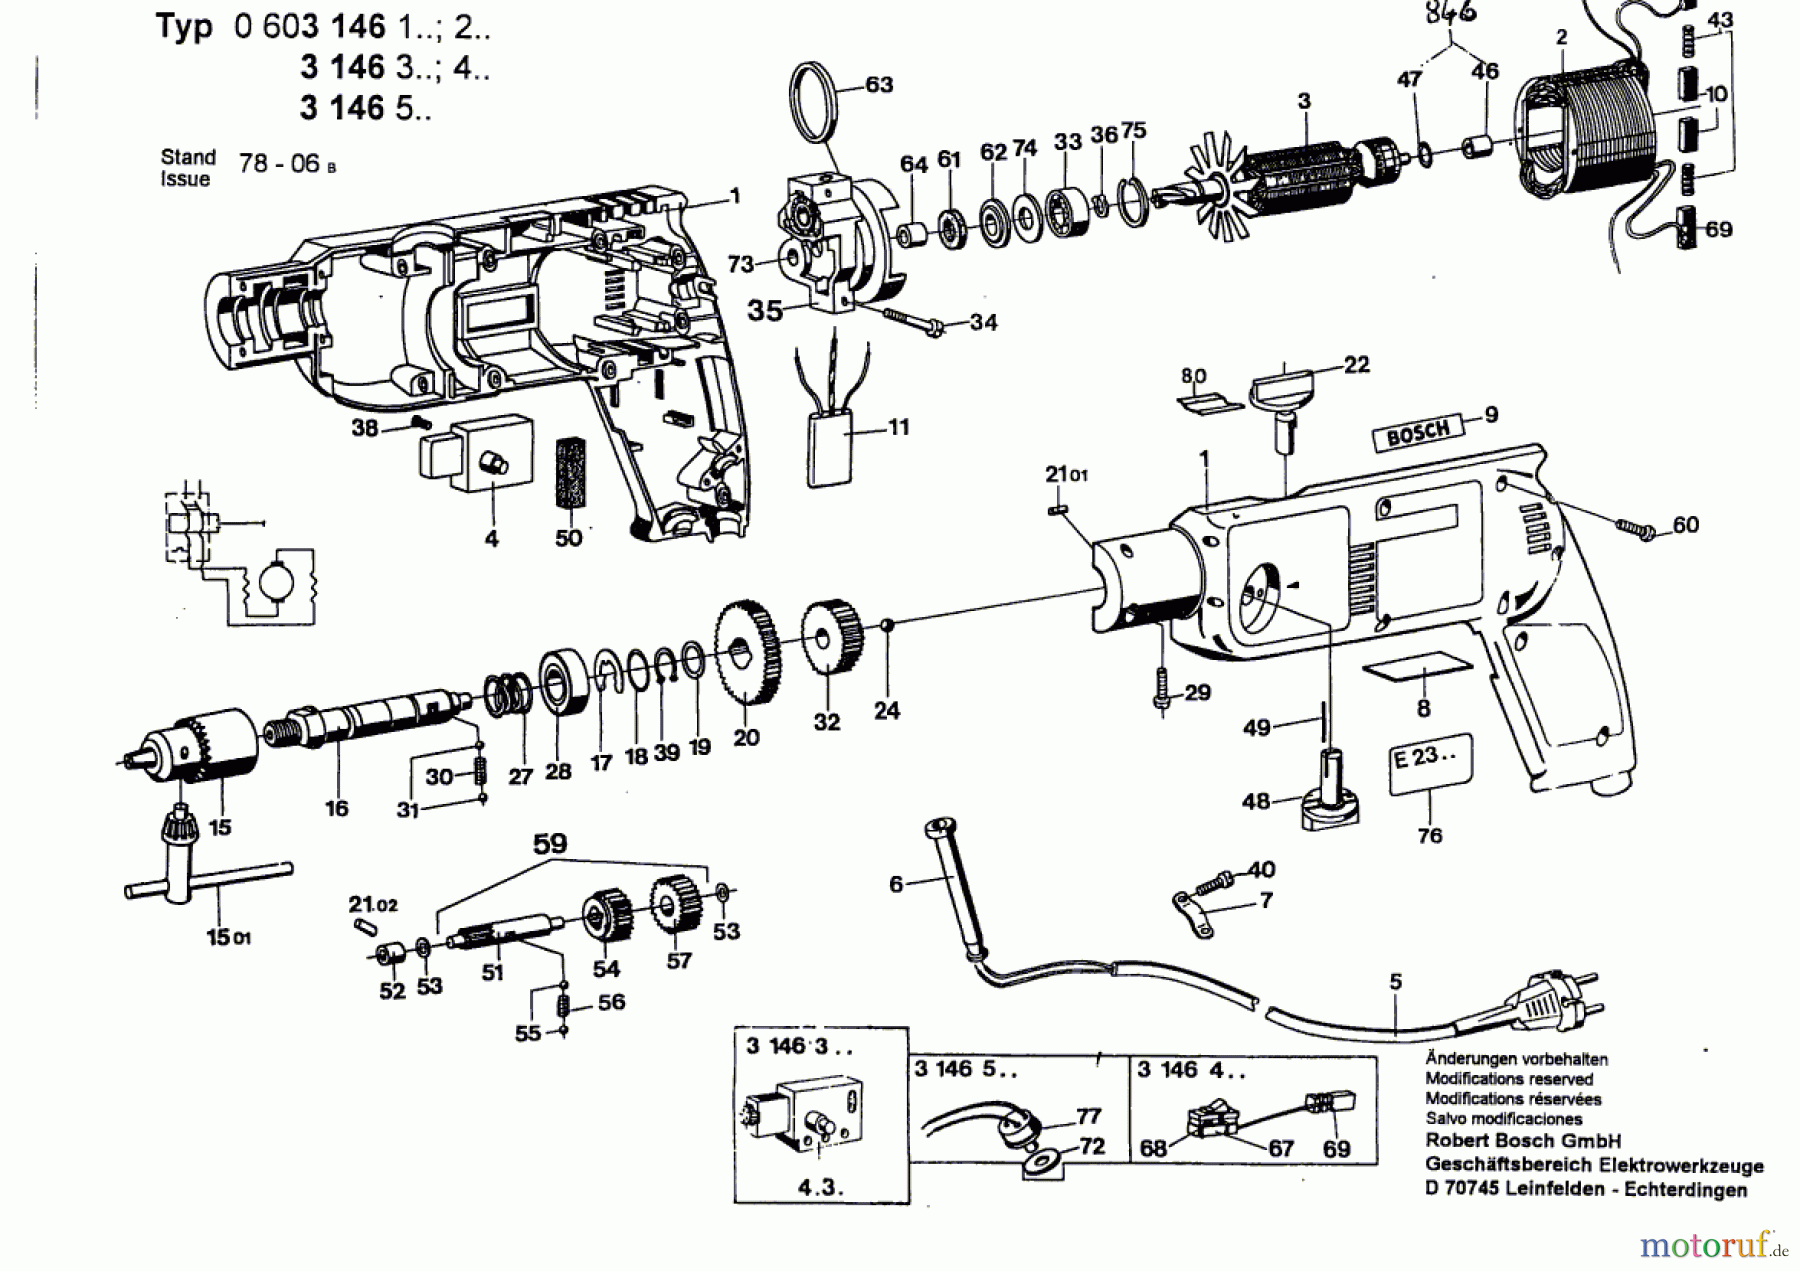  Bosch Werkzeug Hf-Bohrmaschine E23 SB0 Seite 1